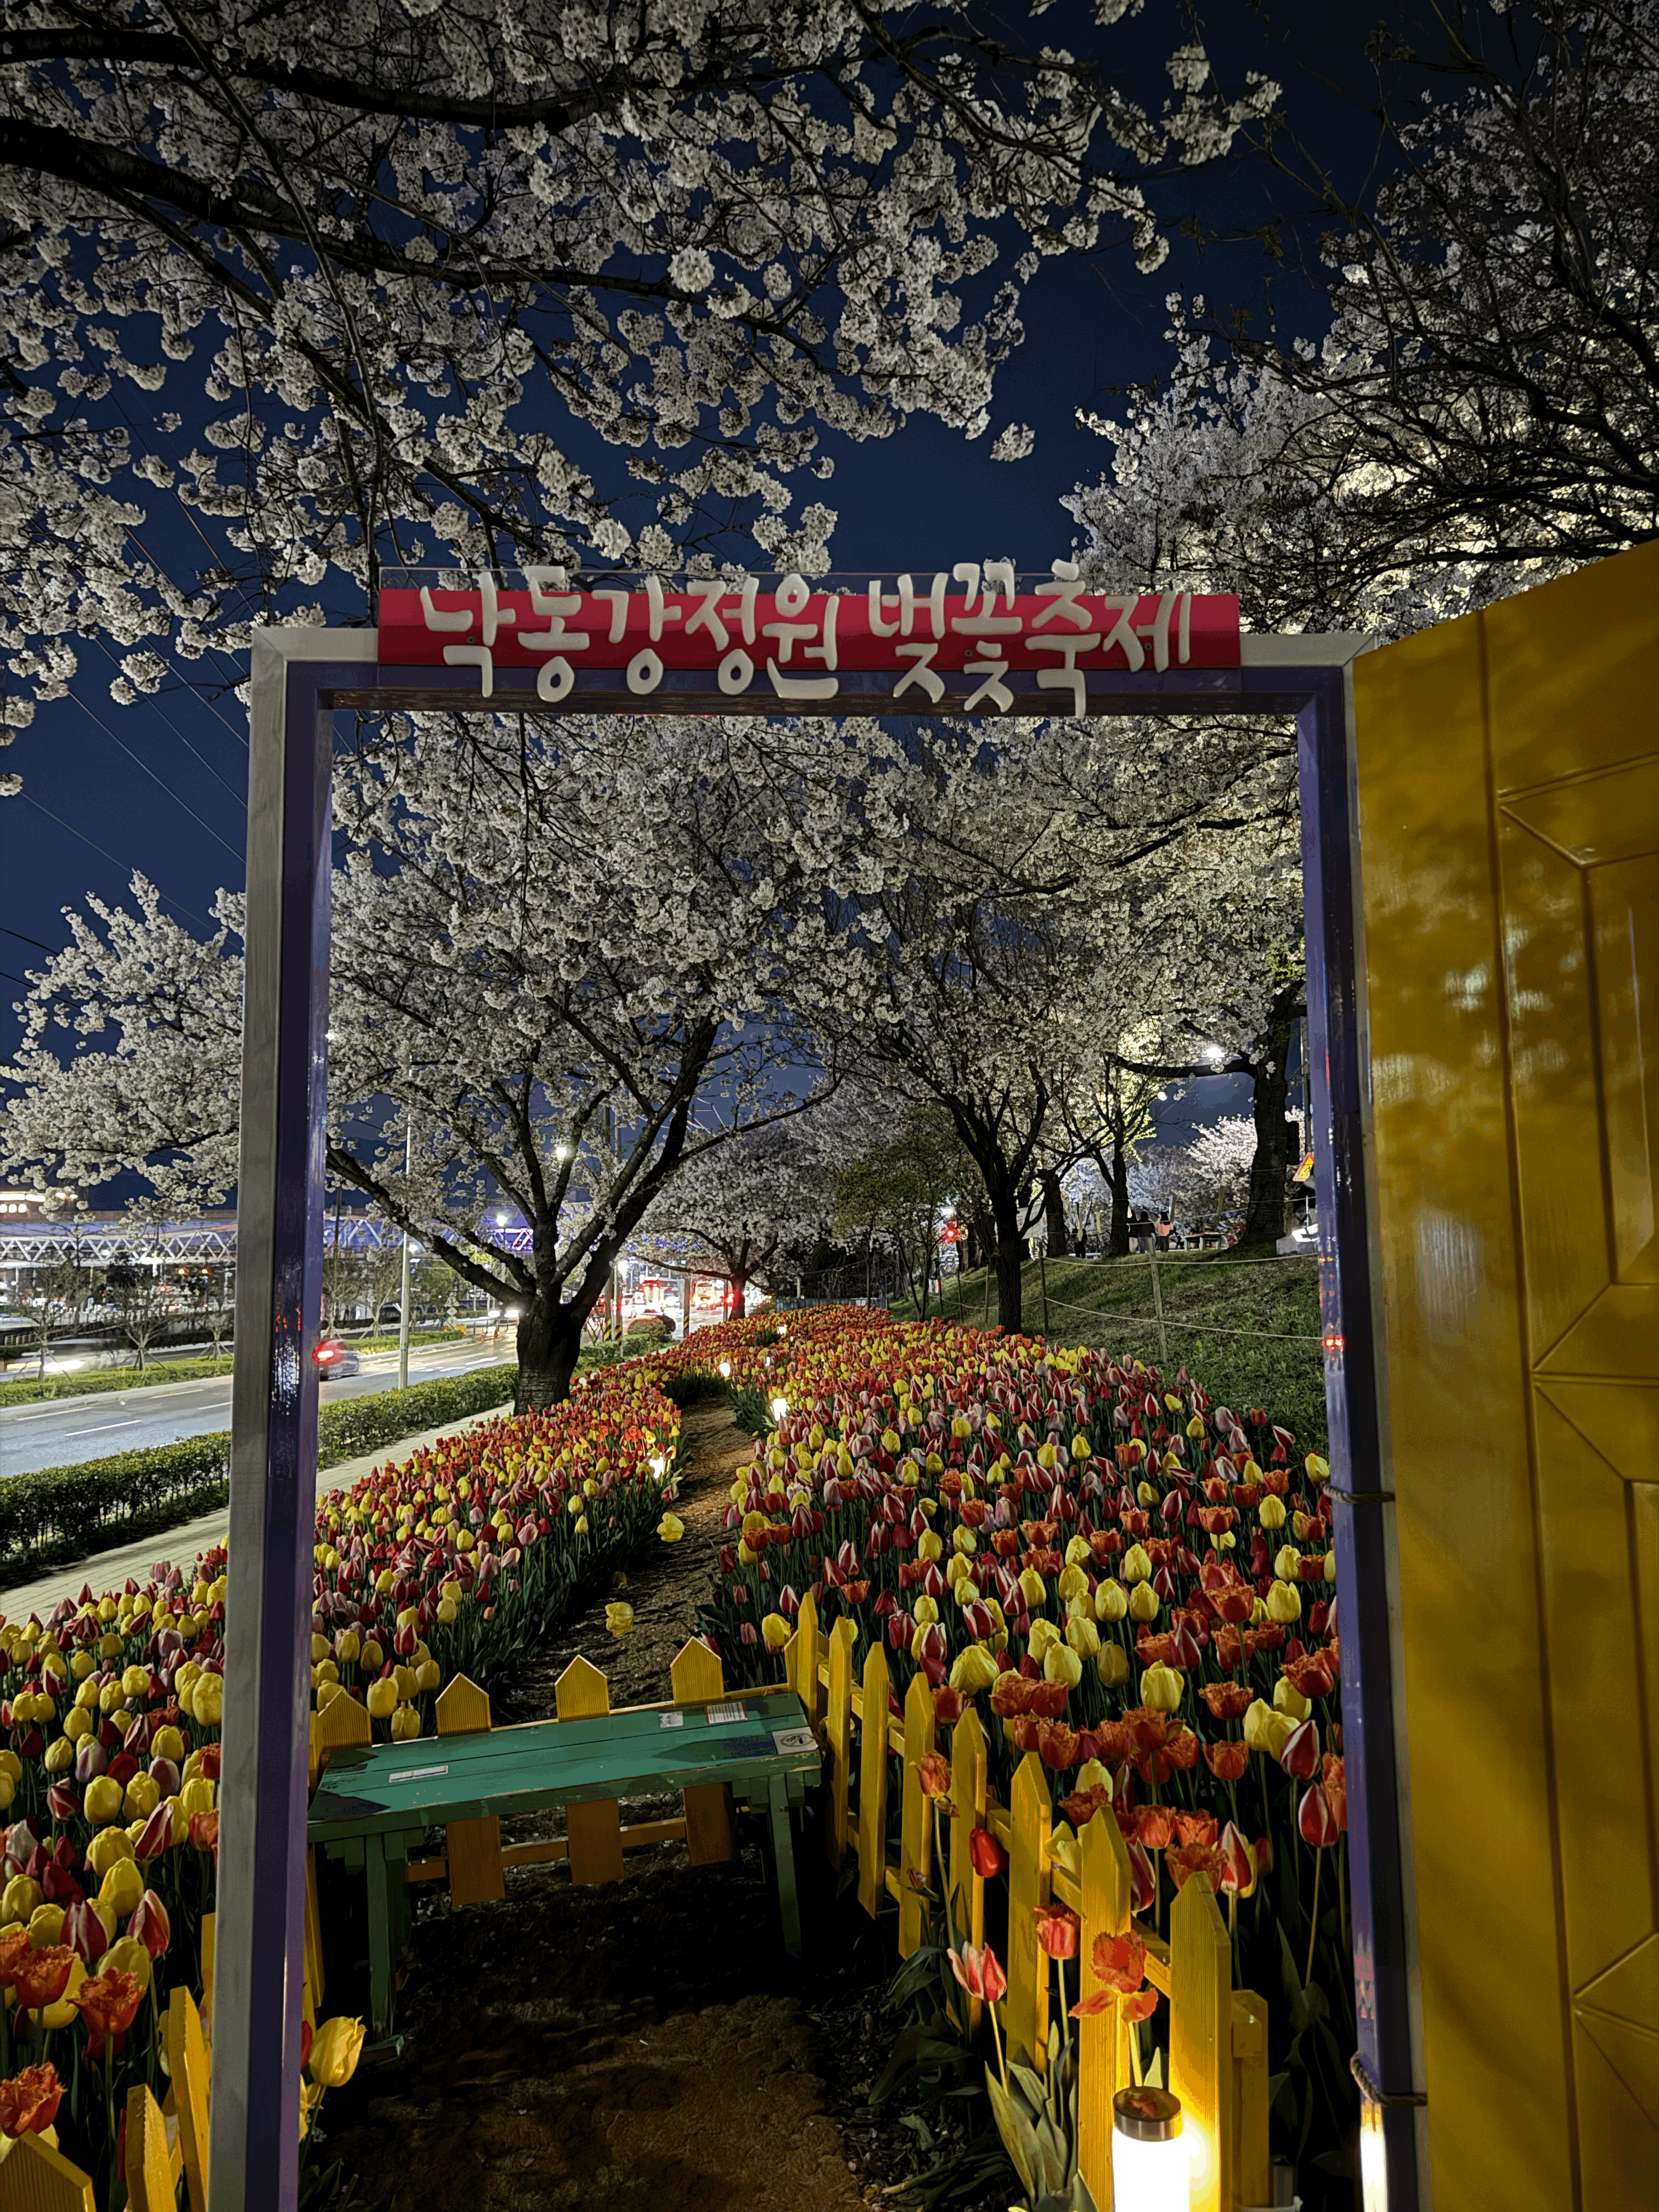 보라색 문틀에 노랑문이 열려 있고
문 넘어로 노랑&#44;빨랑 튤립과 벚꽃나무가 함께 있다.